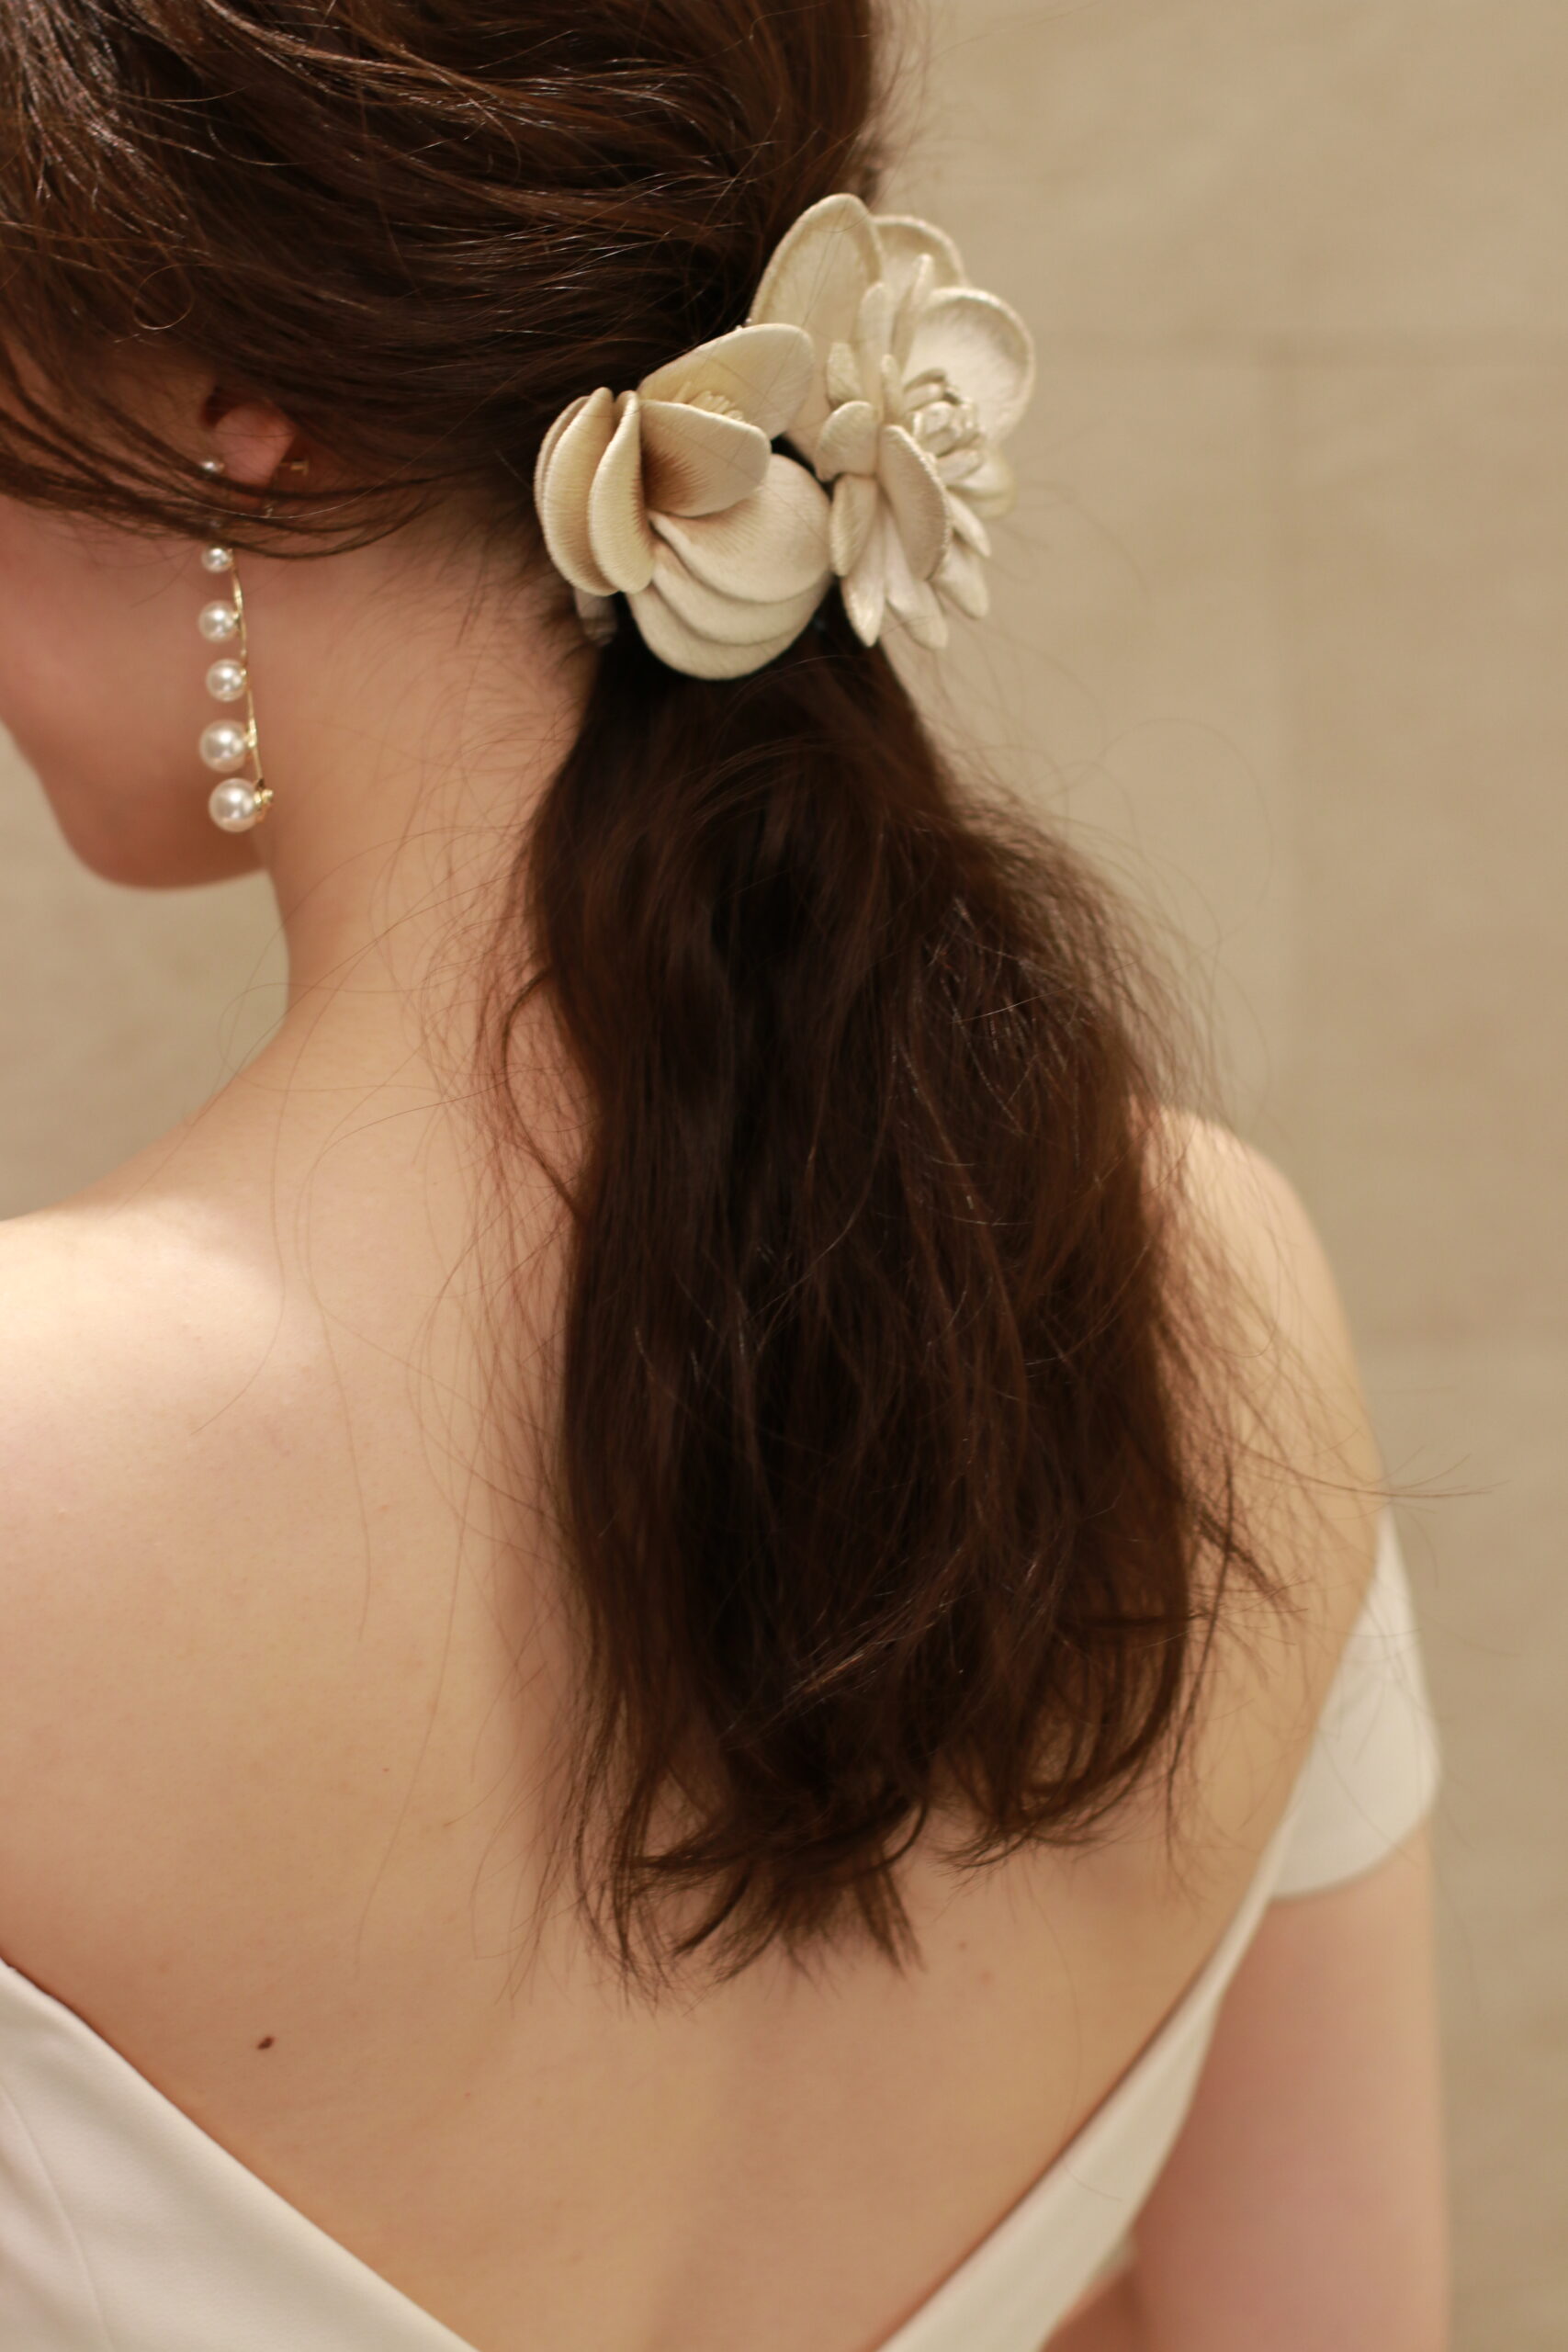 インポートドレスのセレクトショップ、ザトリートドレッシングに入荷した新作の刺繍花の髪飾りをエリザベスバウアーのパールのイヤリングと合わせる事で、上品で可憐なコーディネートになります